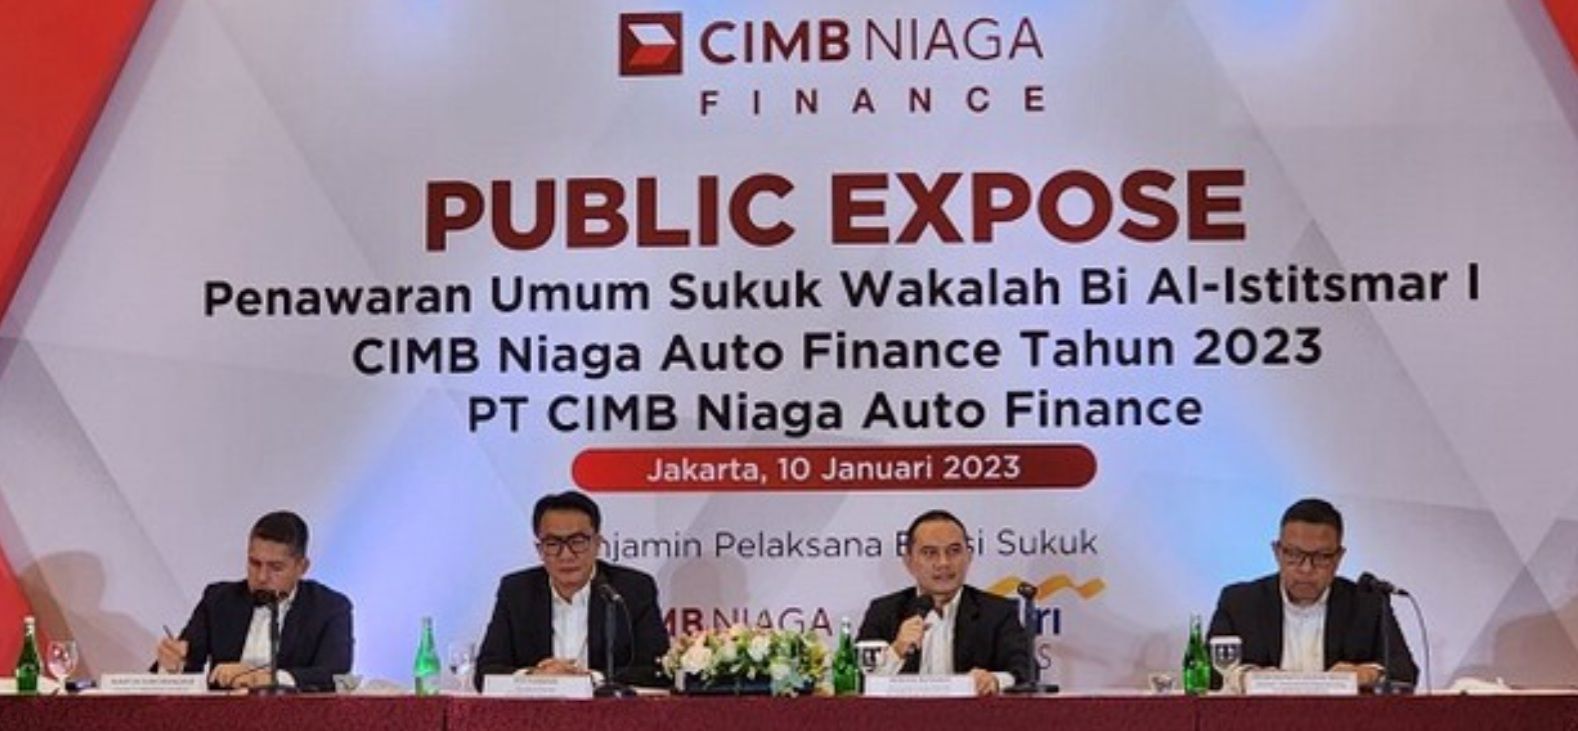 PT CIMB Niaga Auto Finance (CIMB Niaga Finance) menerbitkan penawaran umum Sukuk Wakalah Bi Al-Istitsmar I CIMB Niaga Auto Finance Tahun 2023 dengan jumlah dana modal investasi sebanyak-banyaknya sebesar Rp1 triliun pada 10 Januari 2023.